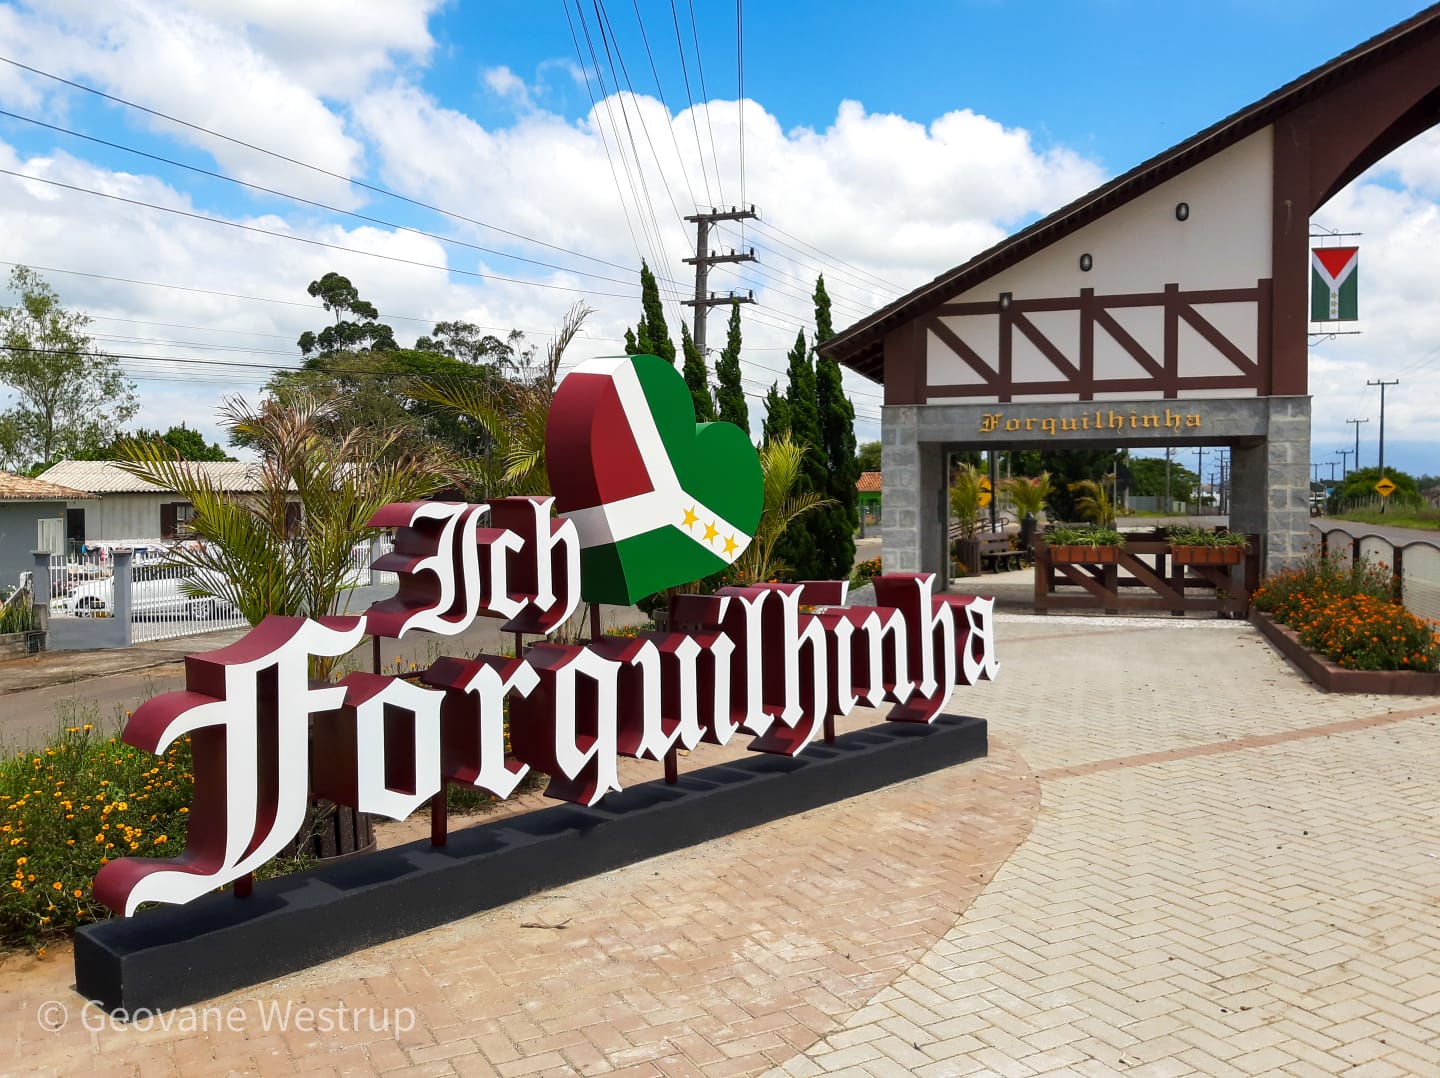 Letreiro em estilo germânico destaca a chegada ao município de Forquilhinha